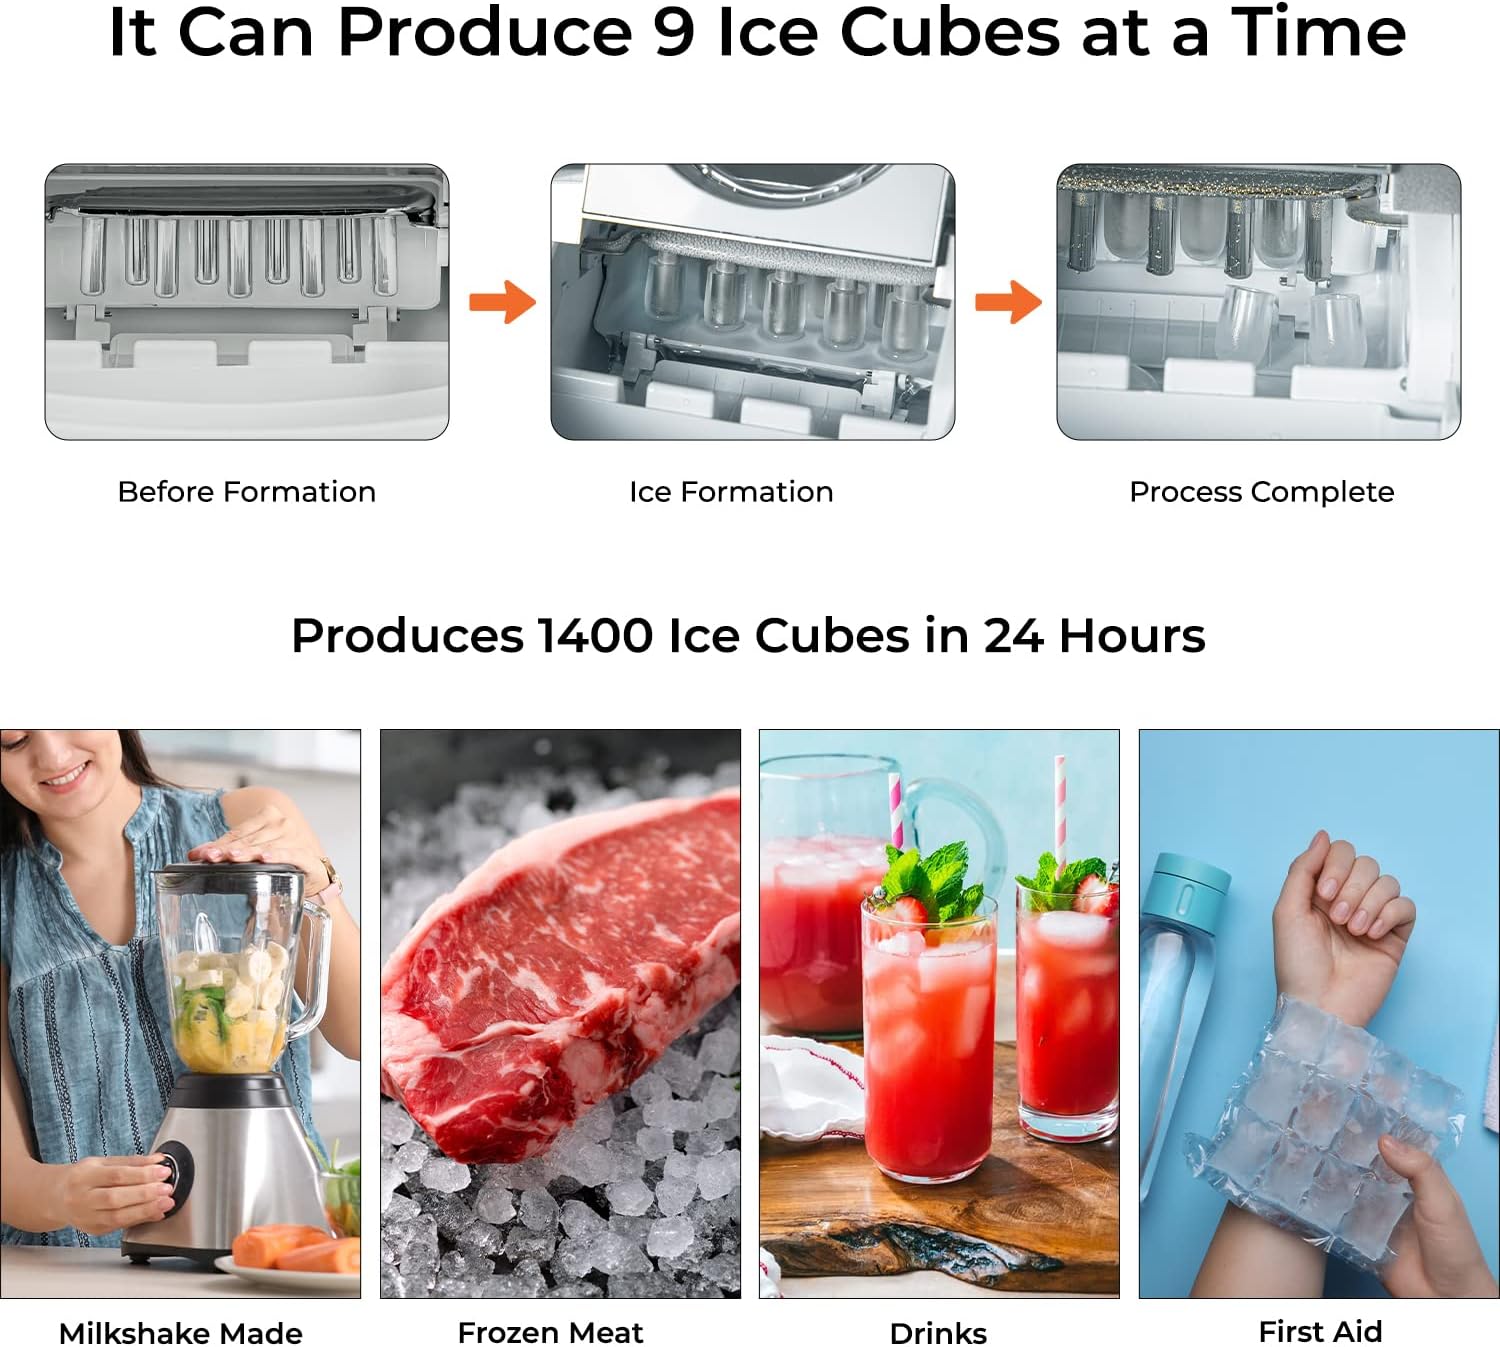 دستگاه یخ ساز جیپاس مدل Geepas Ice Cube Maker - ارسال 10 الی ۱۵ روز کاری